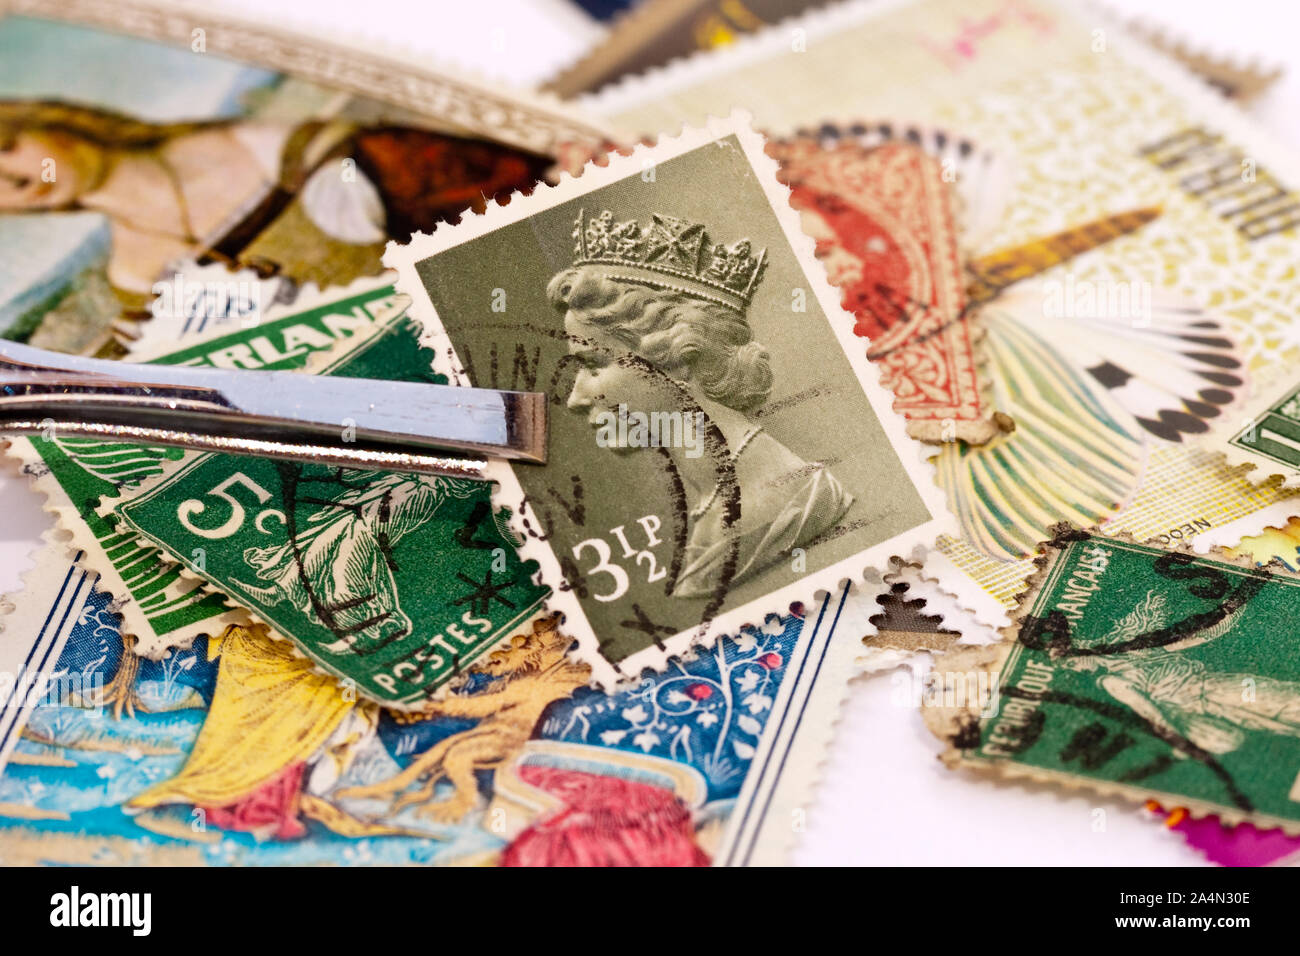 Pincette tenant un timbre-poste britannique avec la reine Elizabeth 2 portrait. Collections de timbres dans l'arrière-plan. Banque D'Images